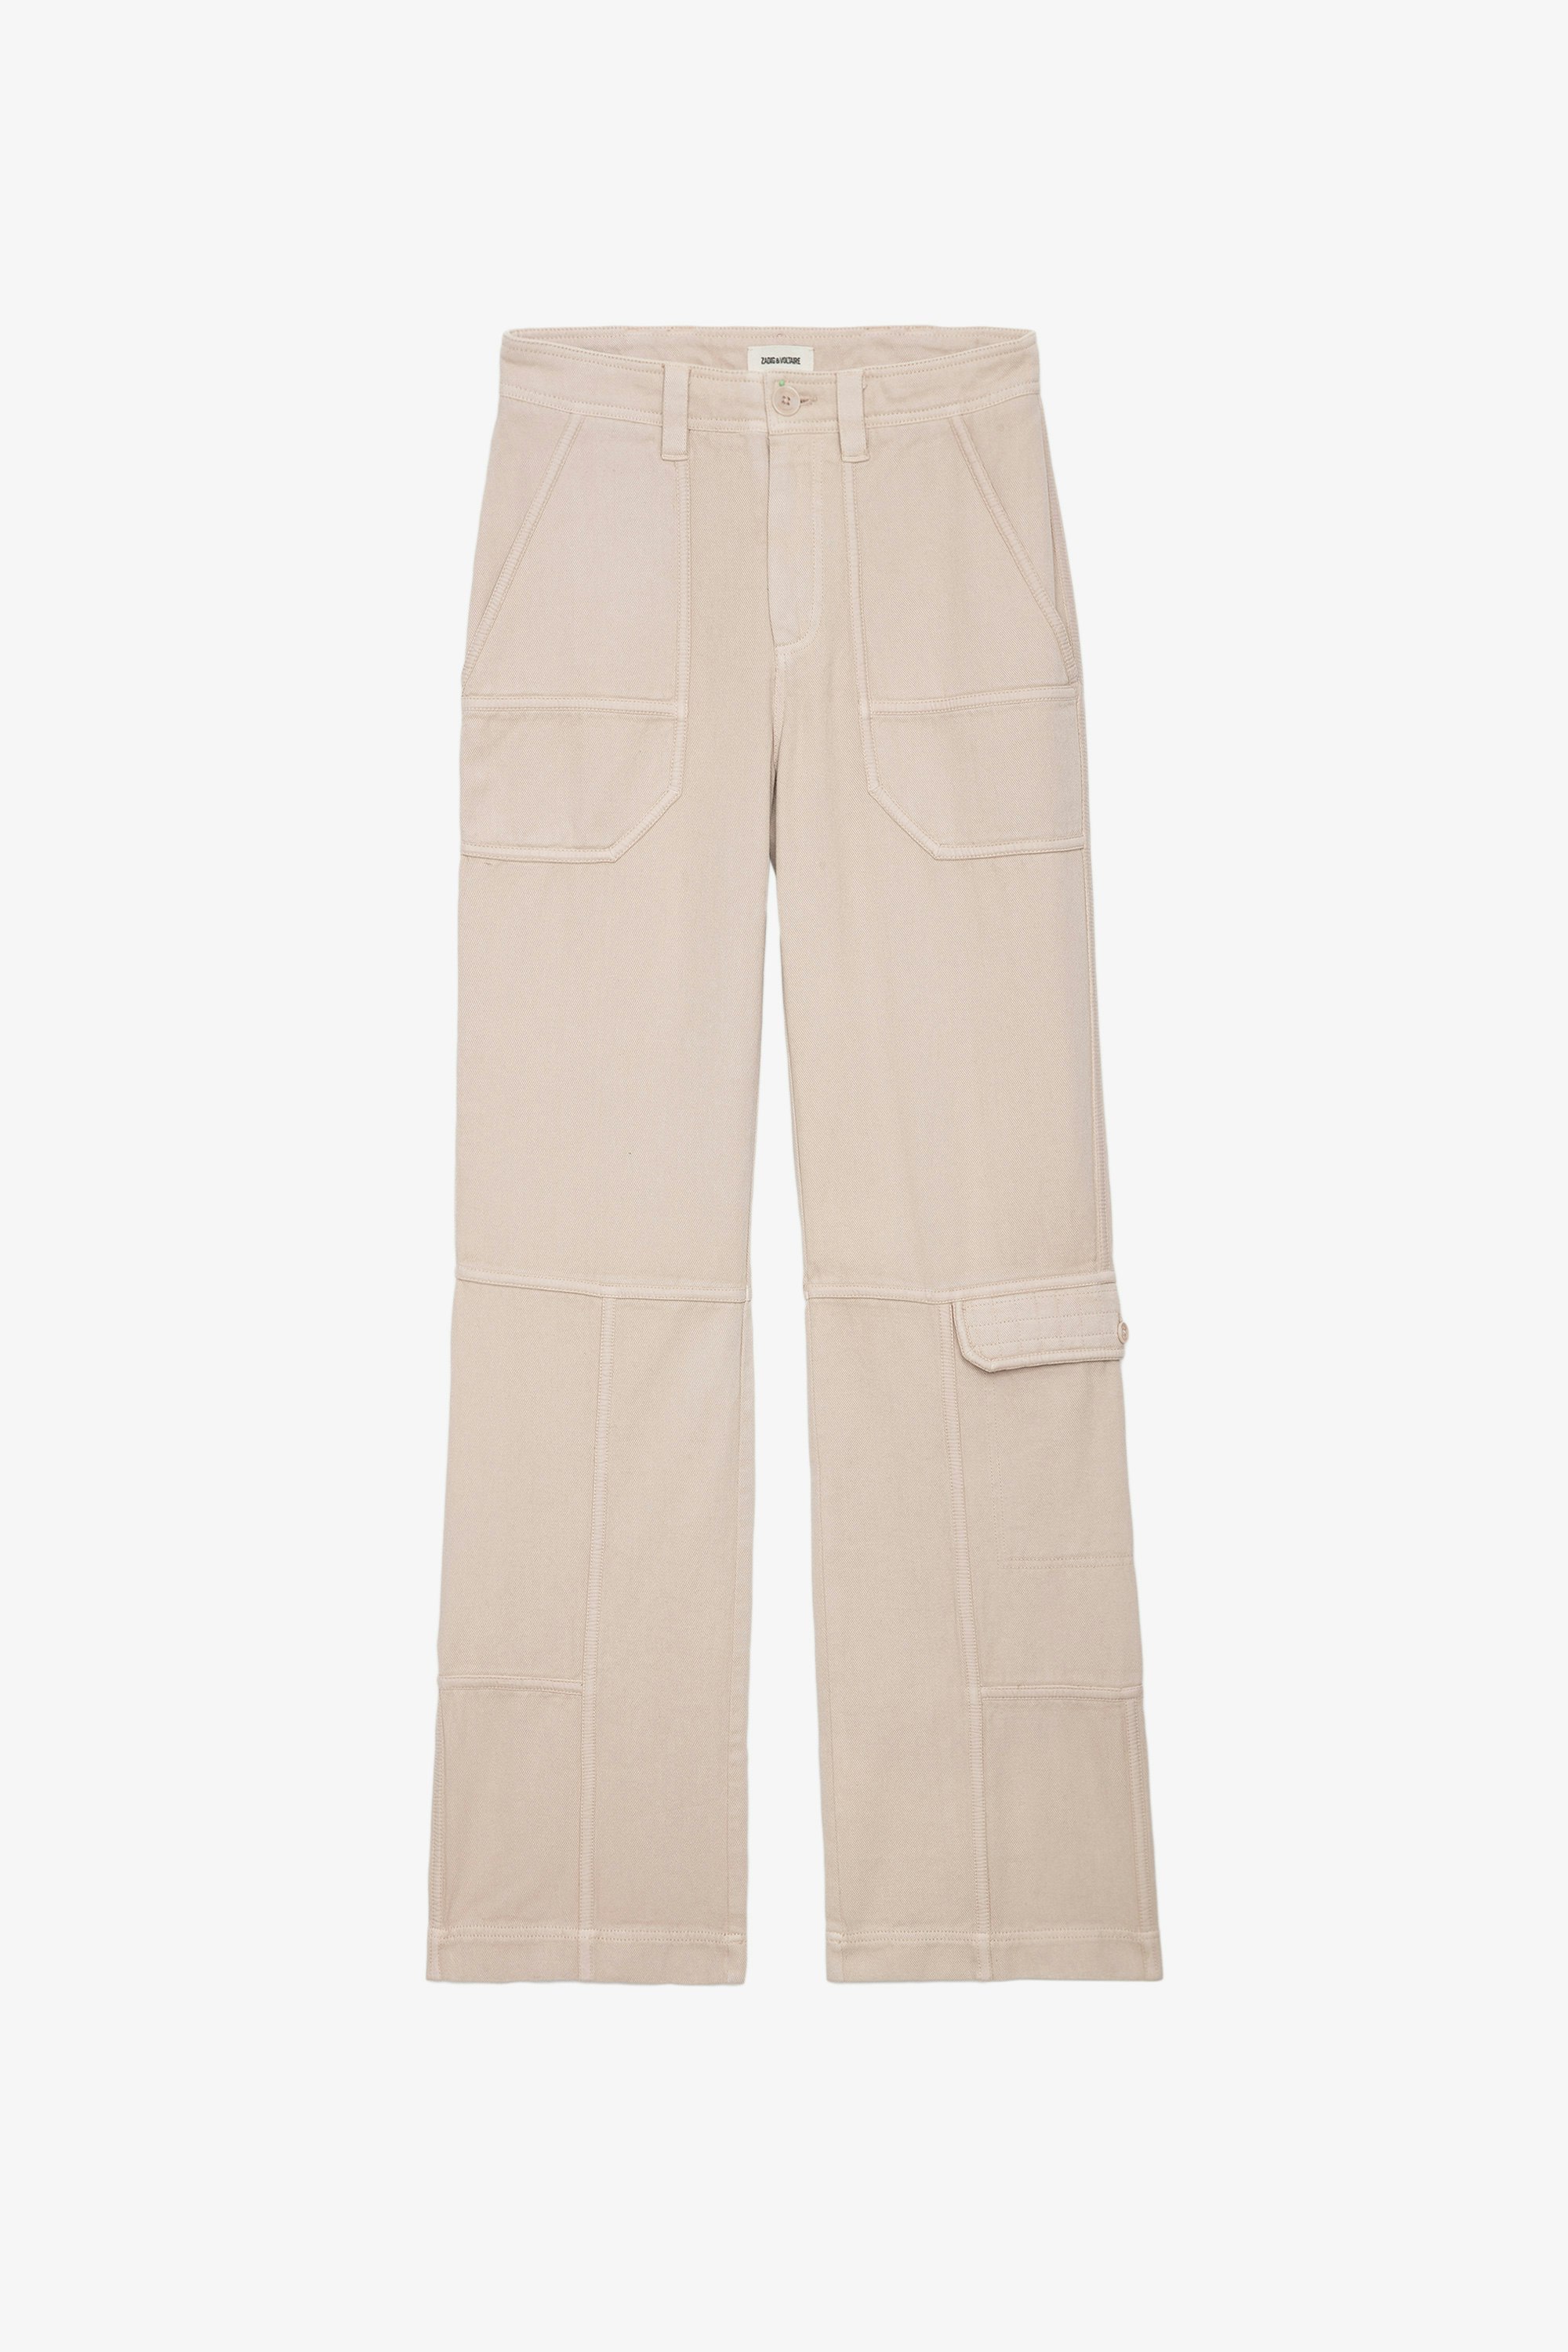 Pantalón Pepper - Pantalón de sarga de algodón en color beige con detalles de contraste.